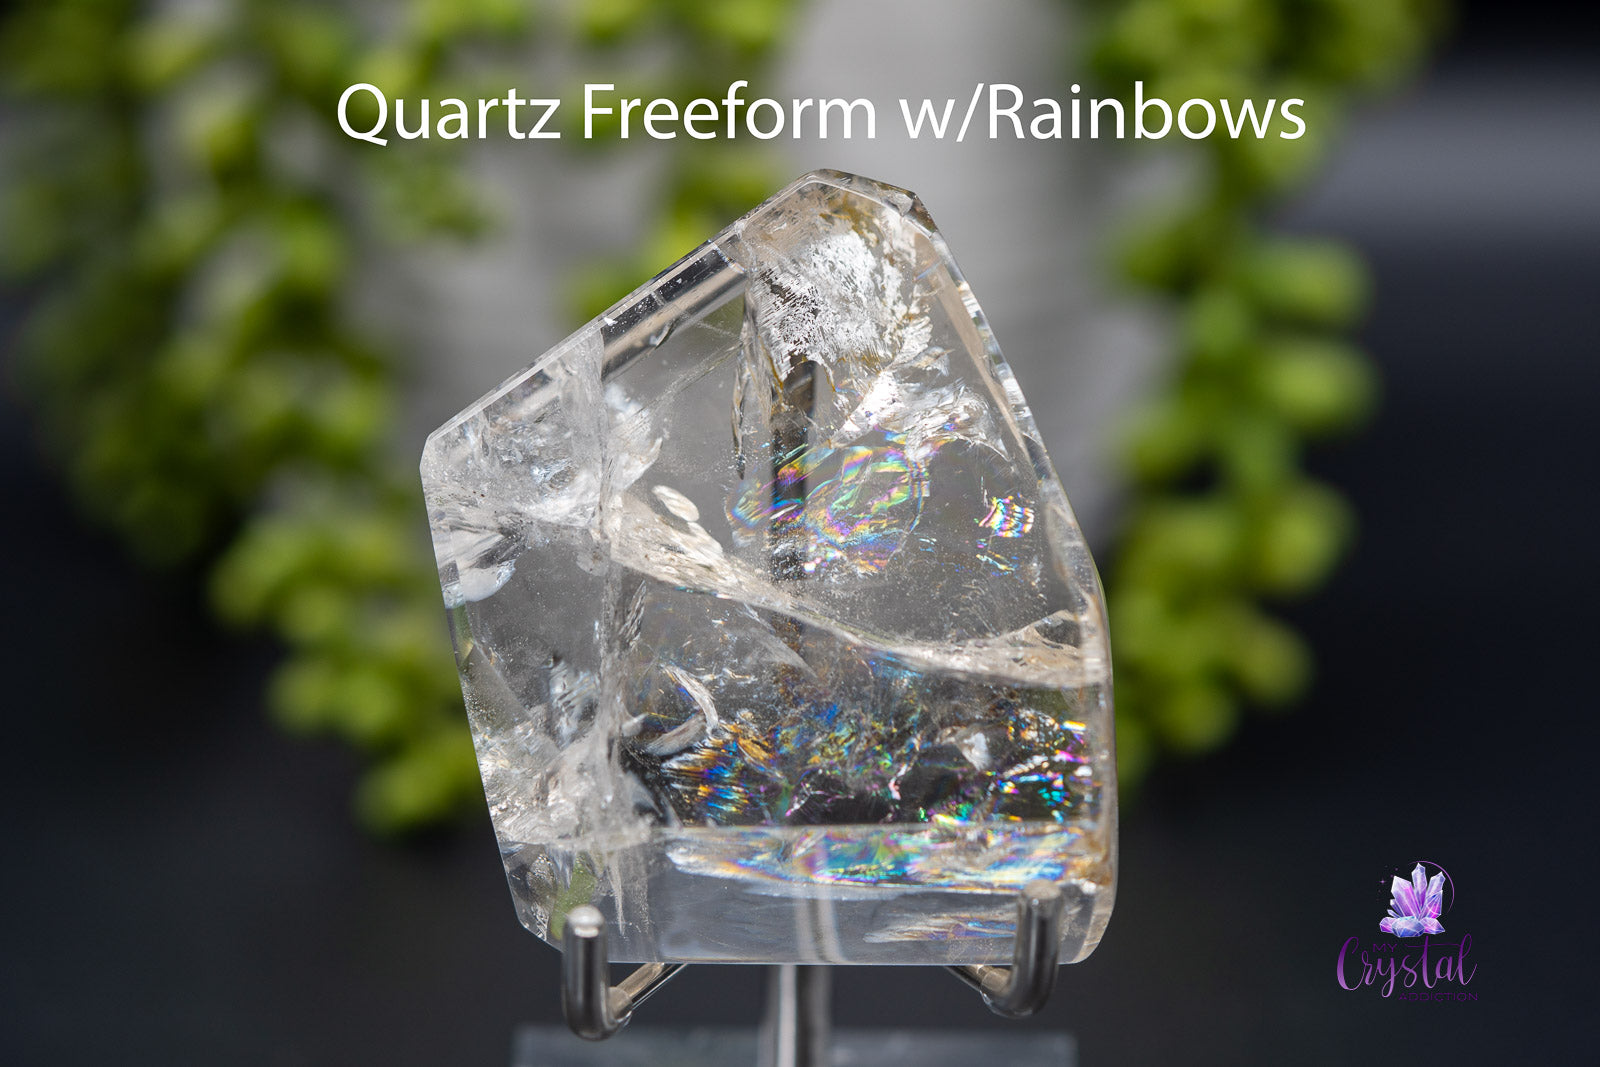 Quartz Freeform w/Rainbows 2.5" x 2.2"/63mm x 55mm - My Crystal Addiction